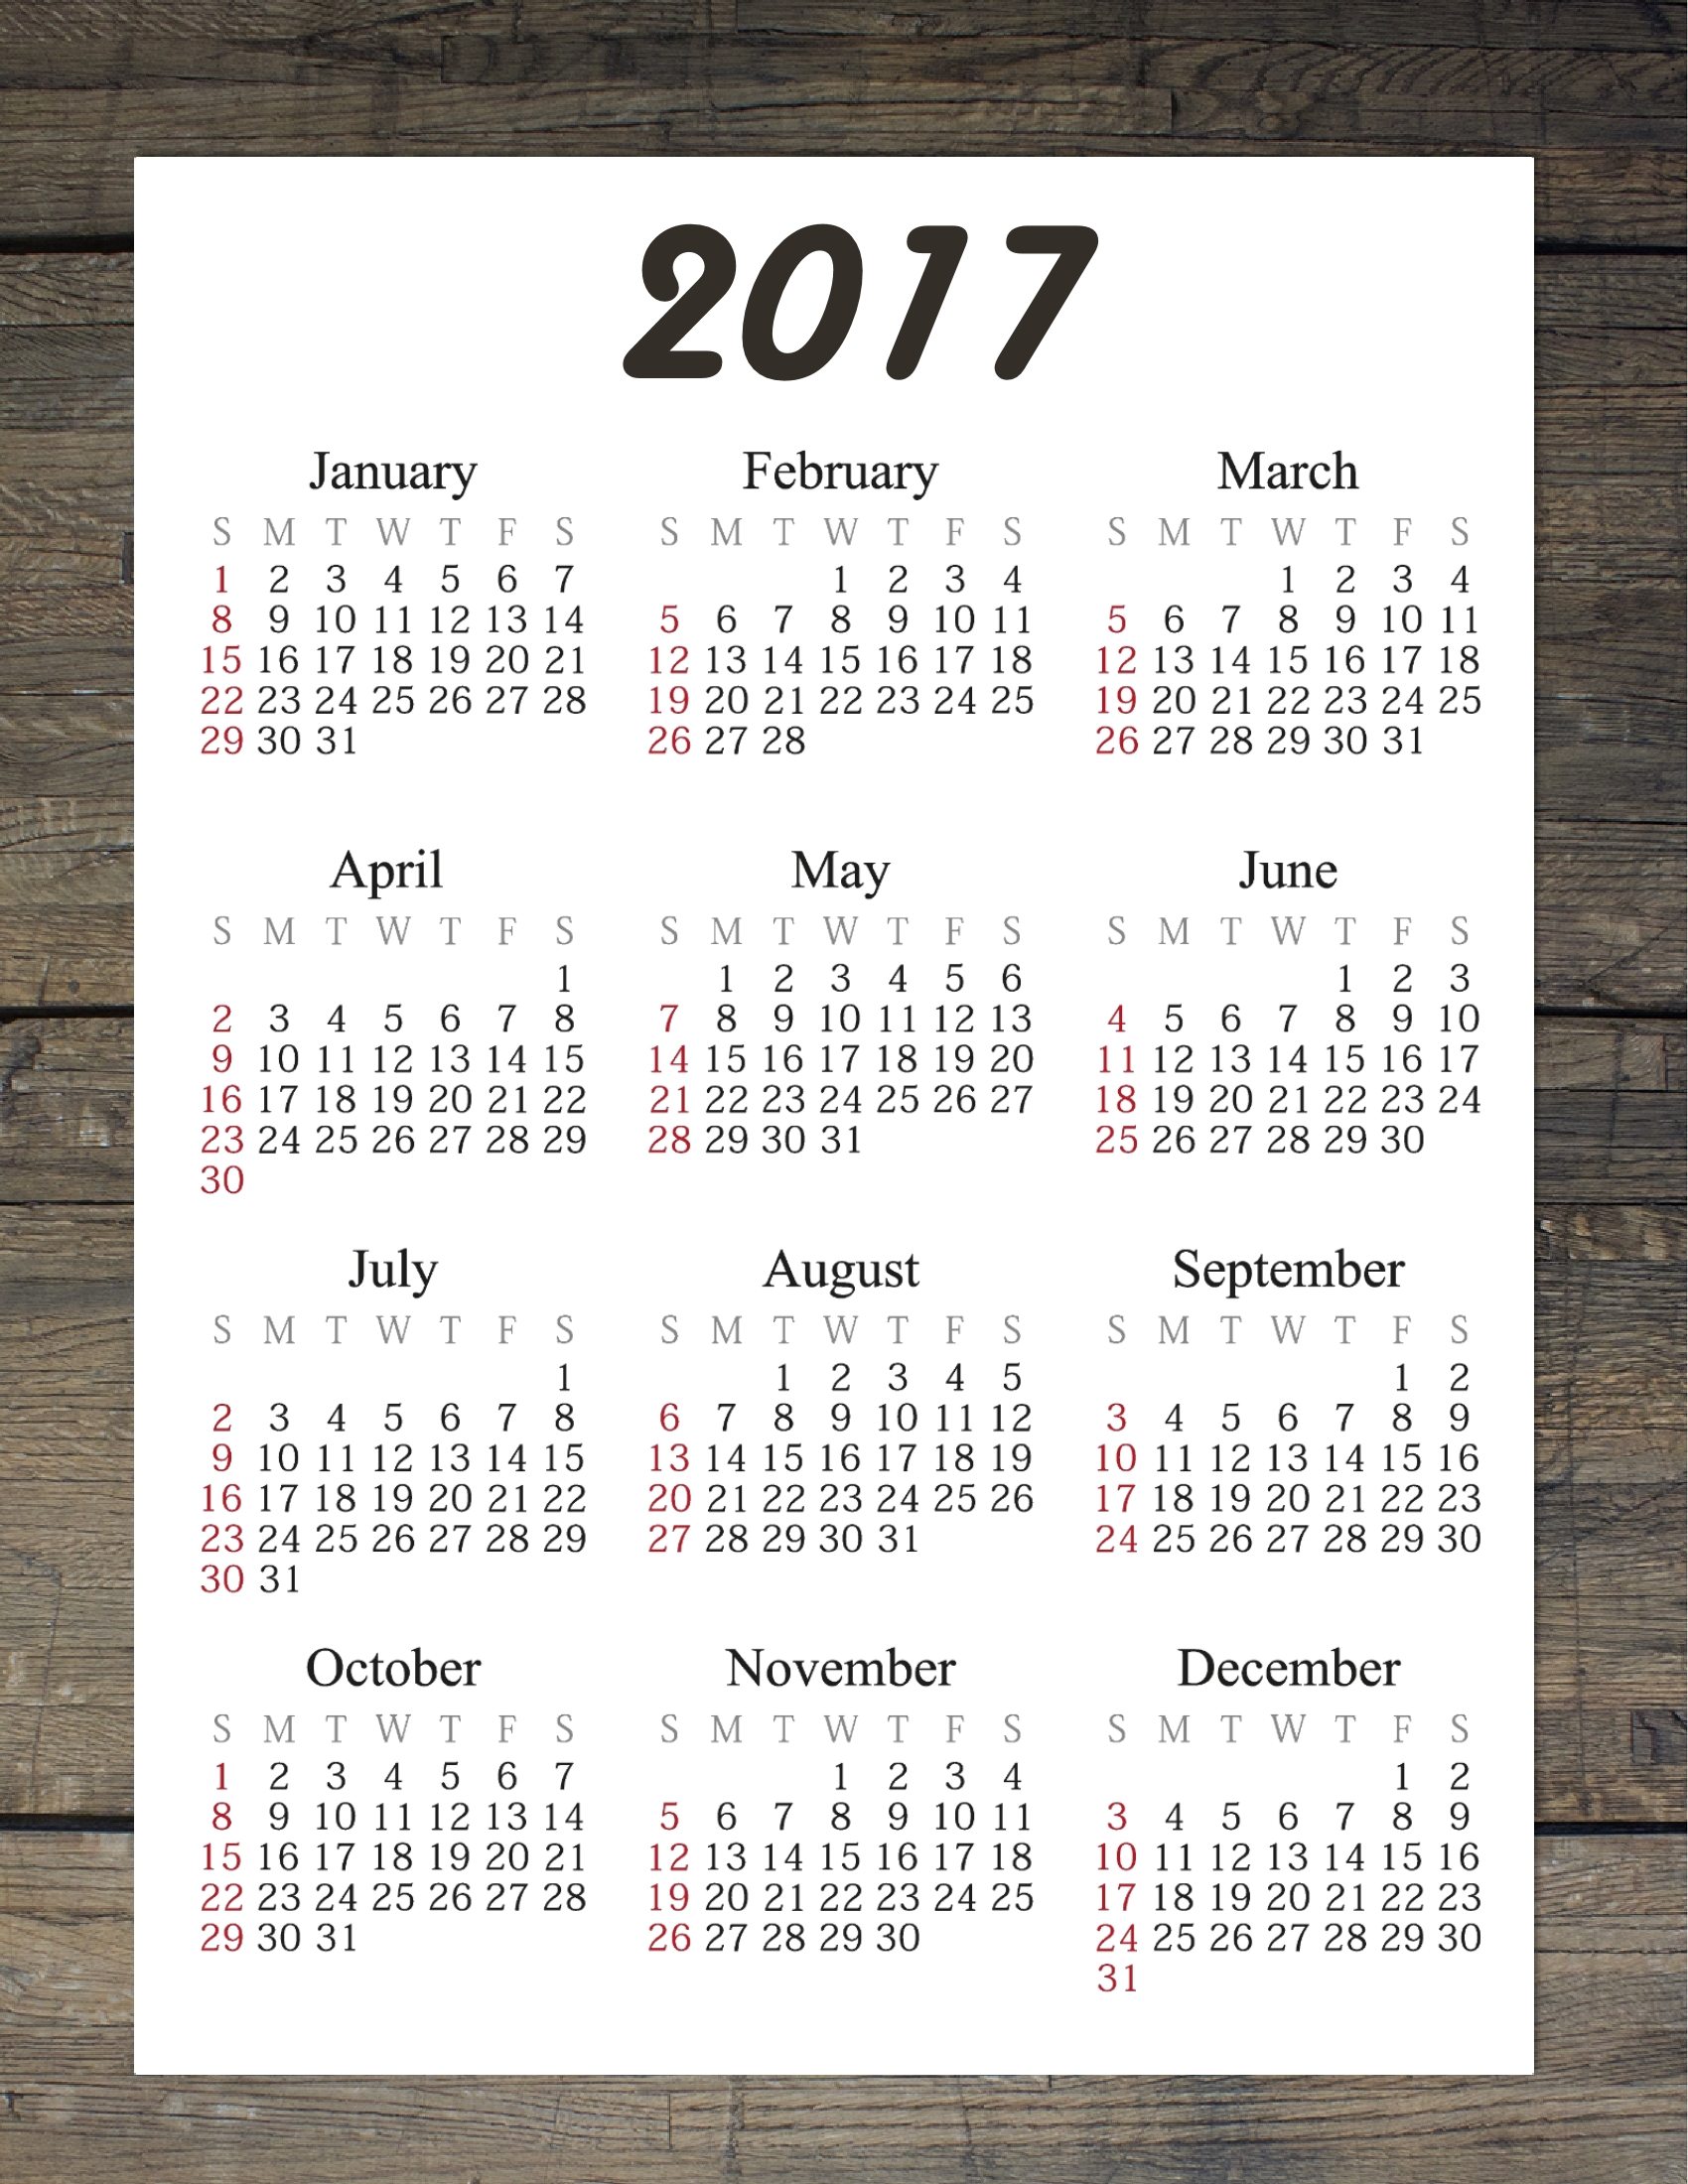 October 2017 Calendar Excel E1503501058754